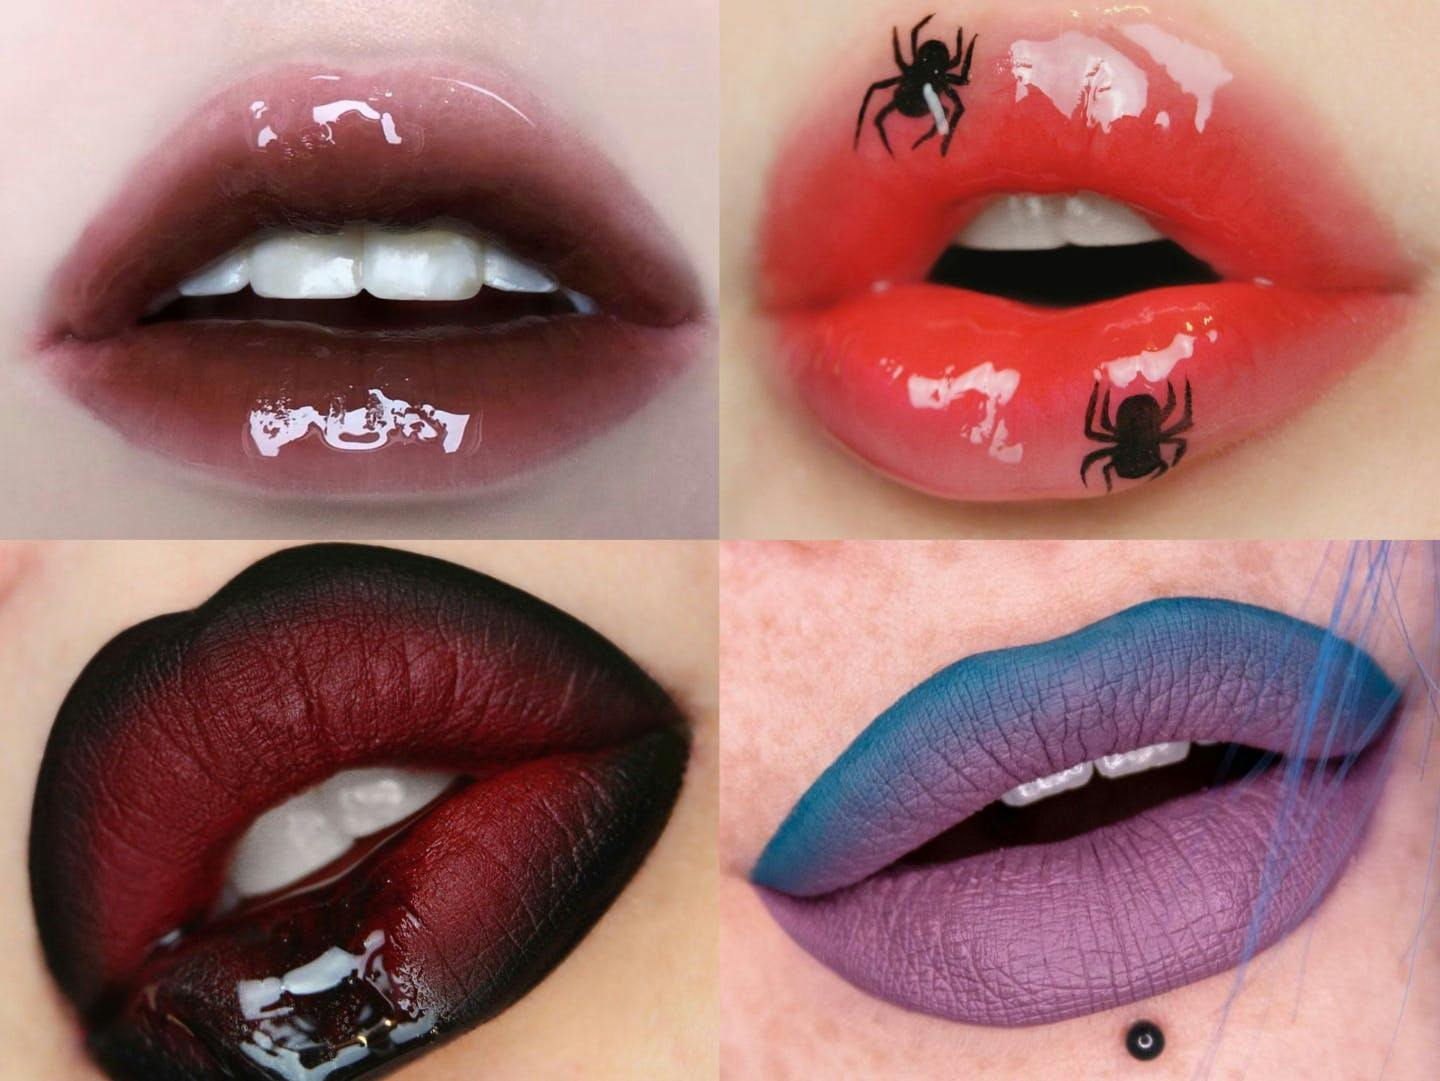 body part mouth person animal invertebrate spider cosmetics lipstick